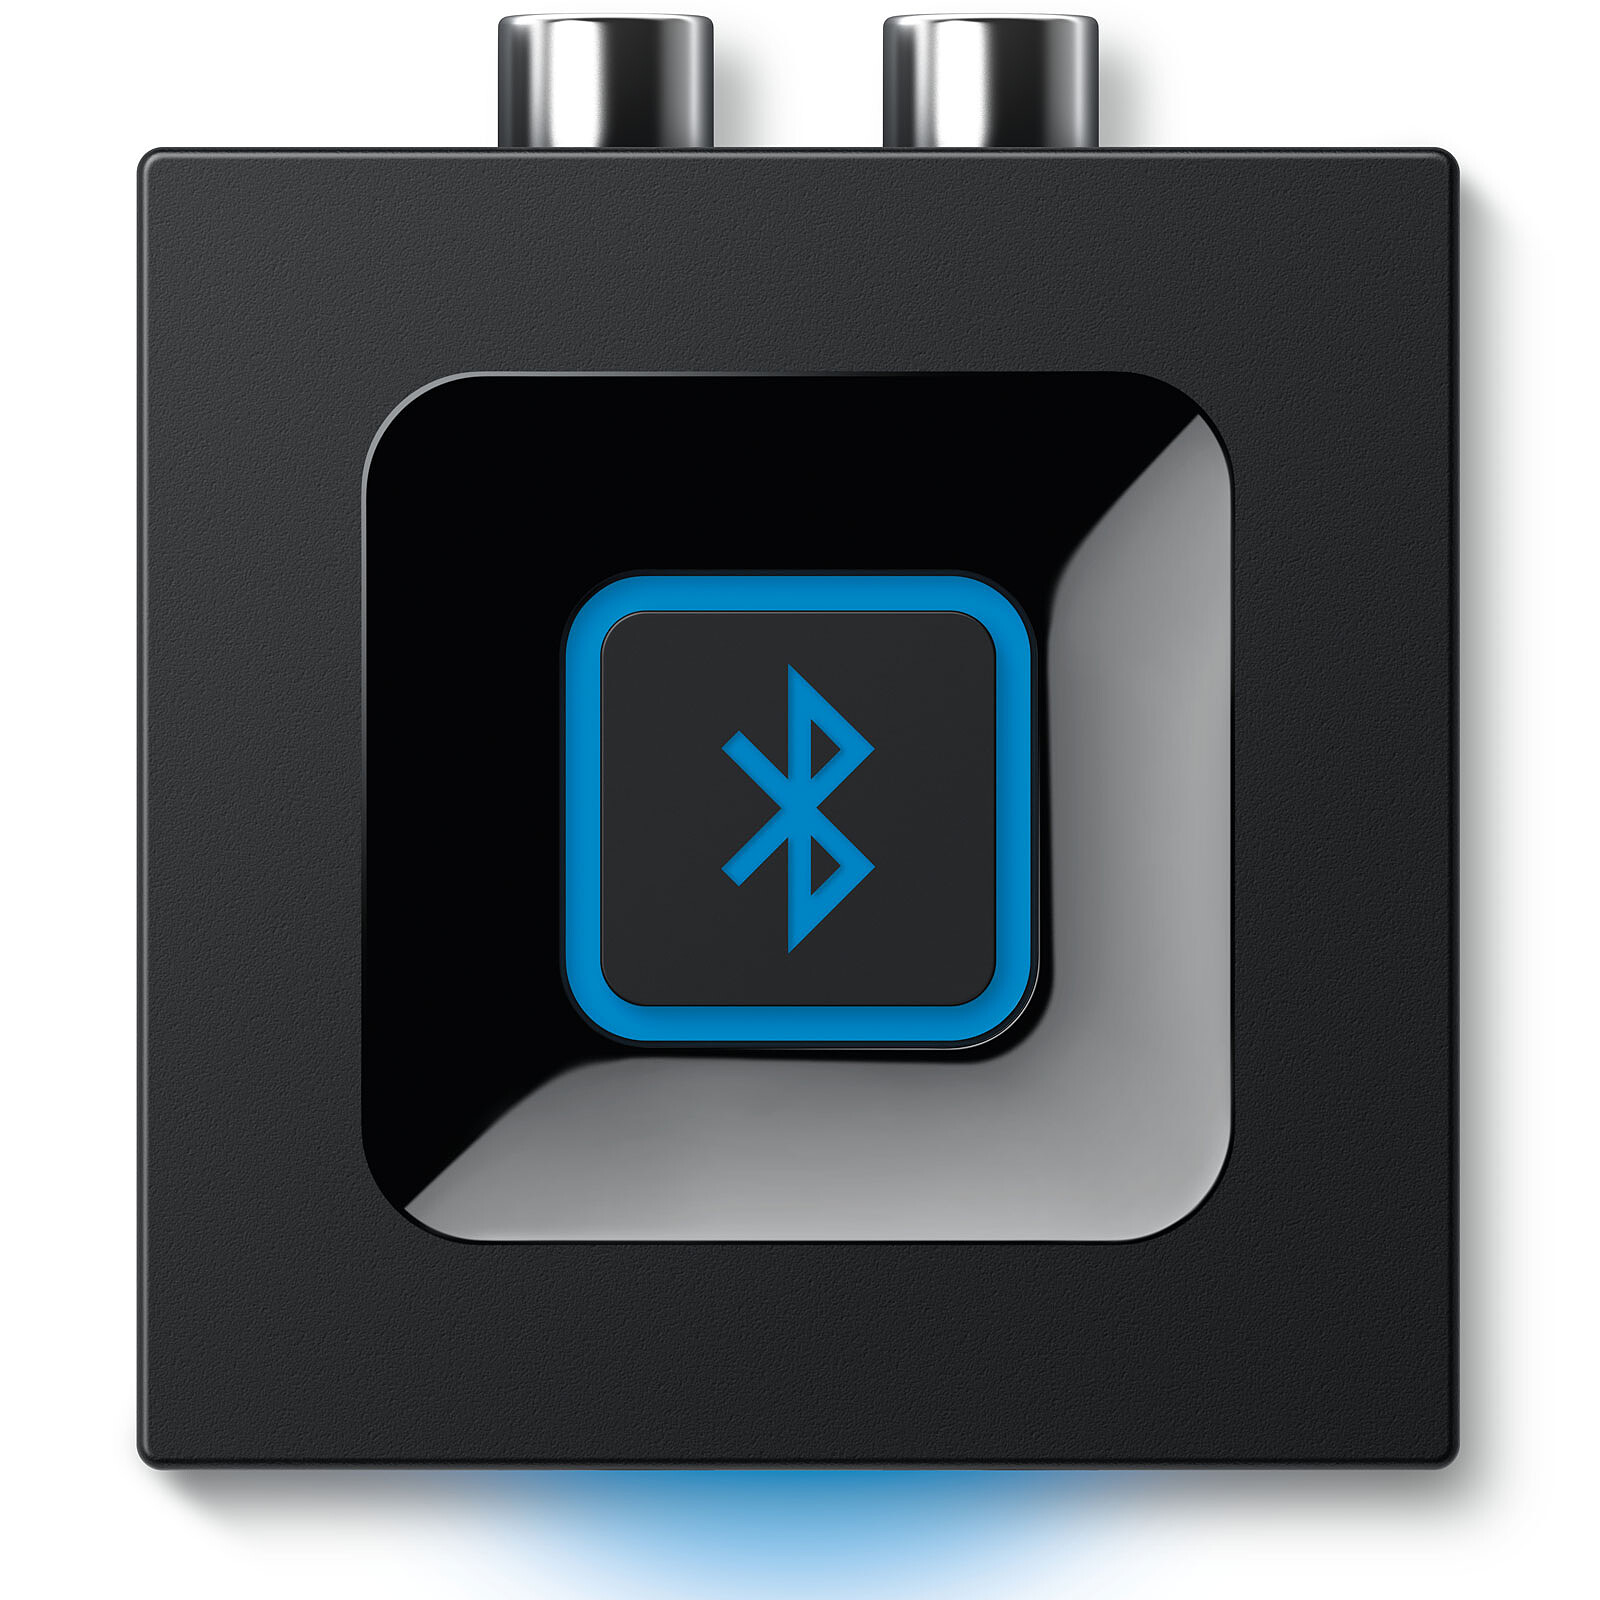 Recepteur Bluetooth ⇒ Les meilleurs modèles 2023 à tous les prix